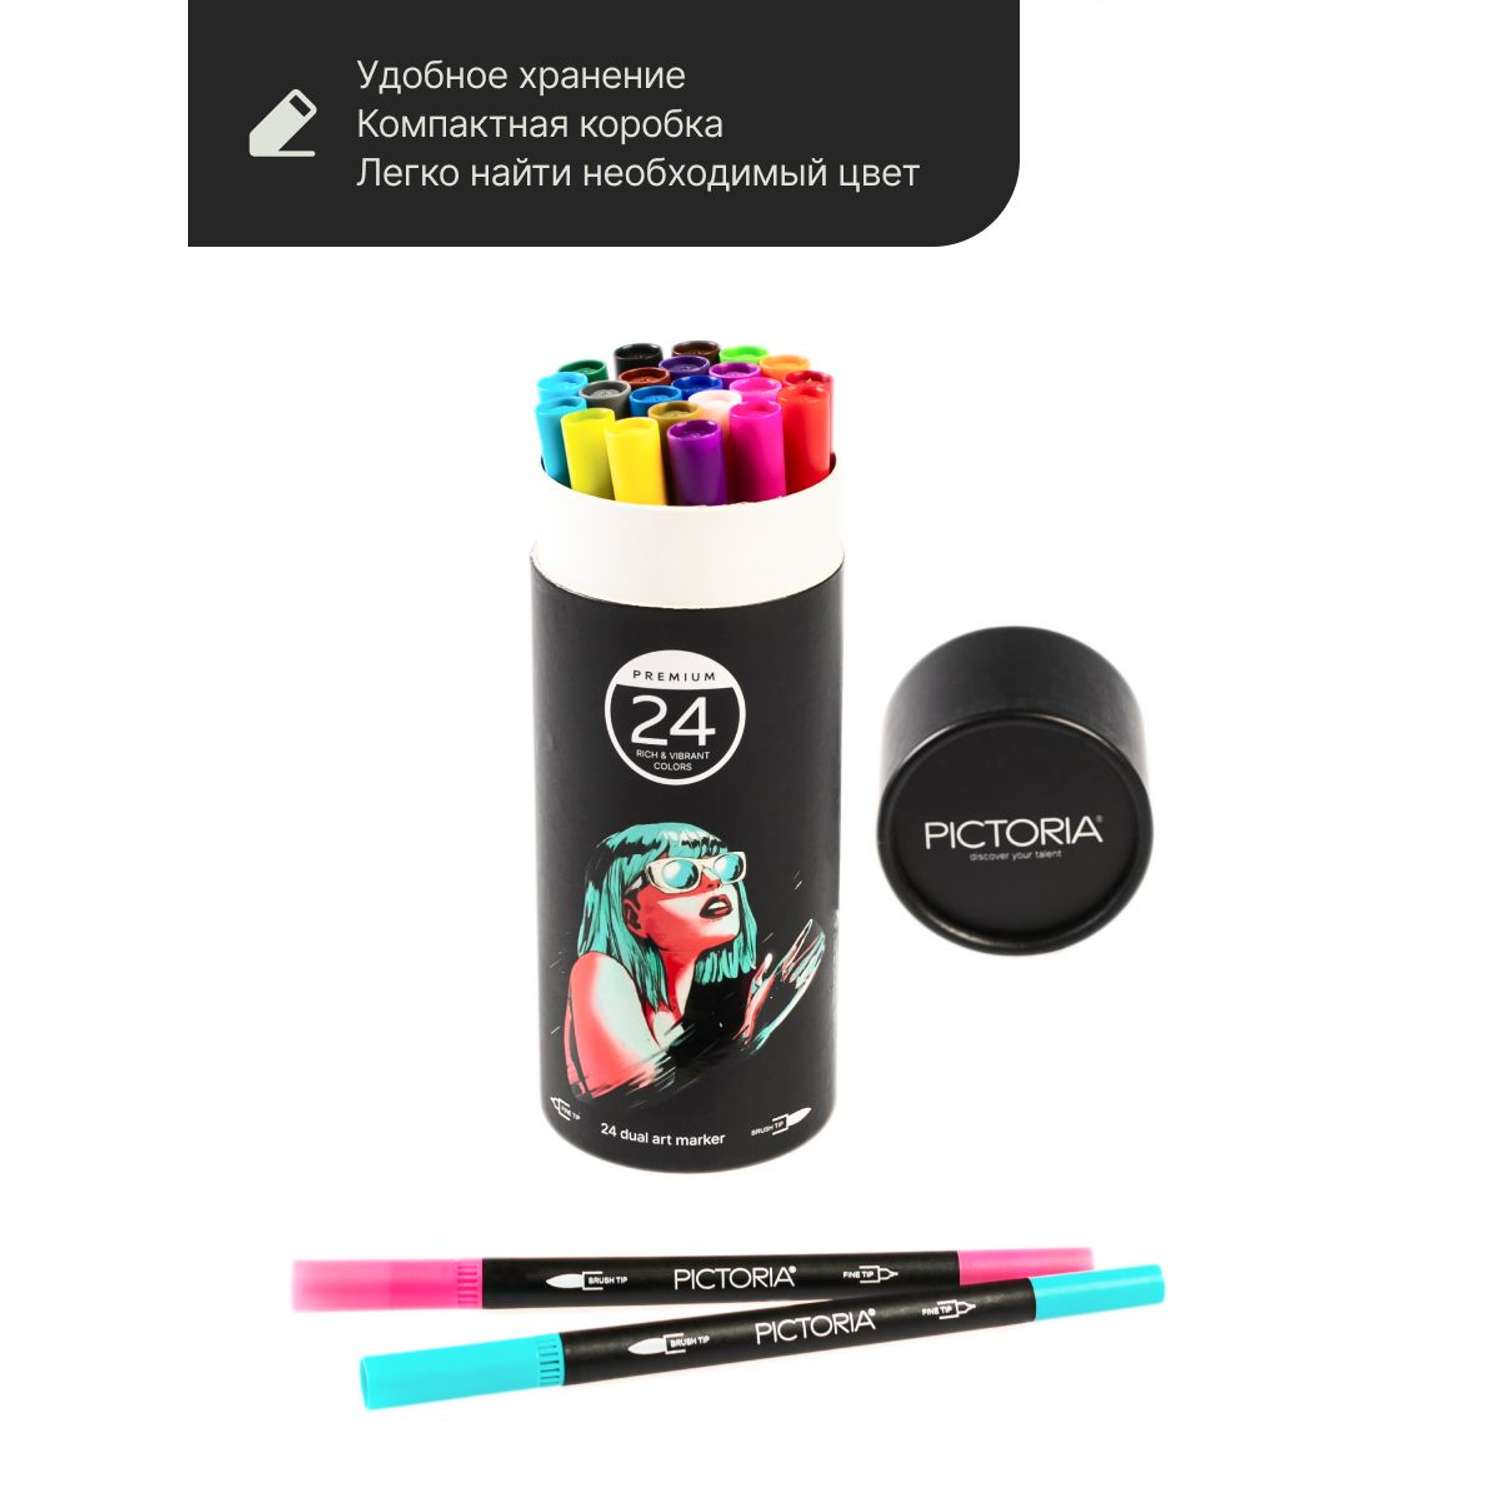 Набор двусторонних маркеров PICTORIA кисть и линер для скетчинга и творчества 24 цвета - фото 5